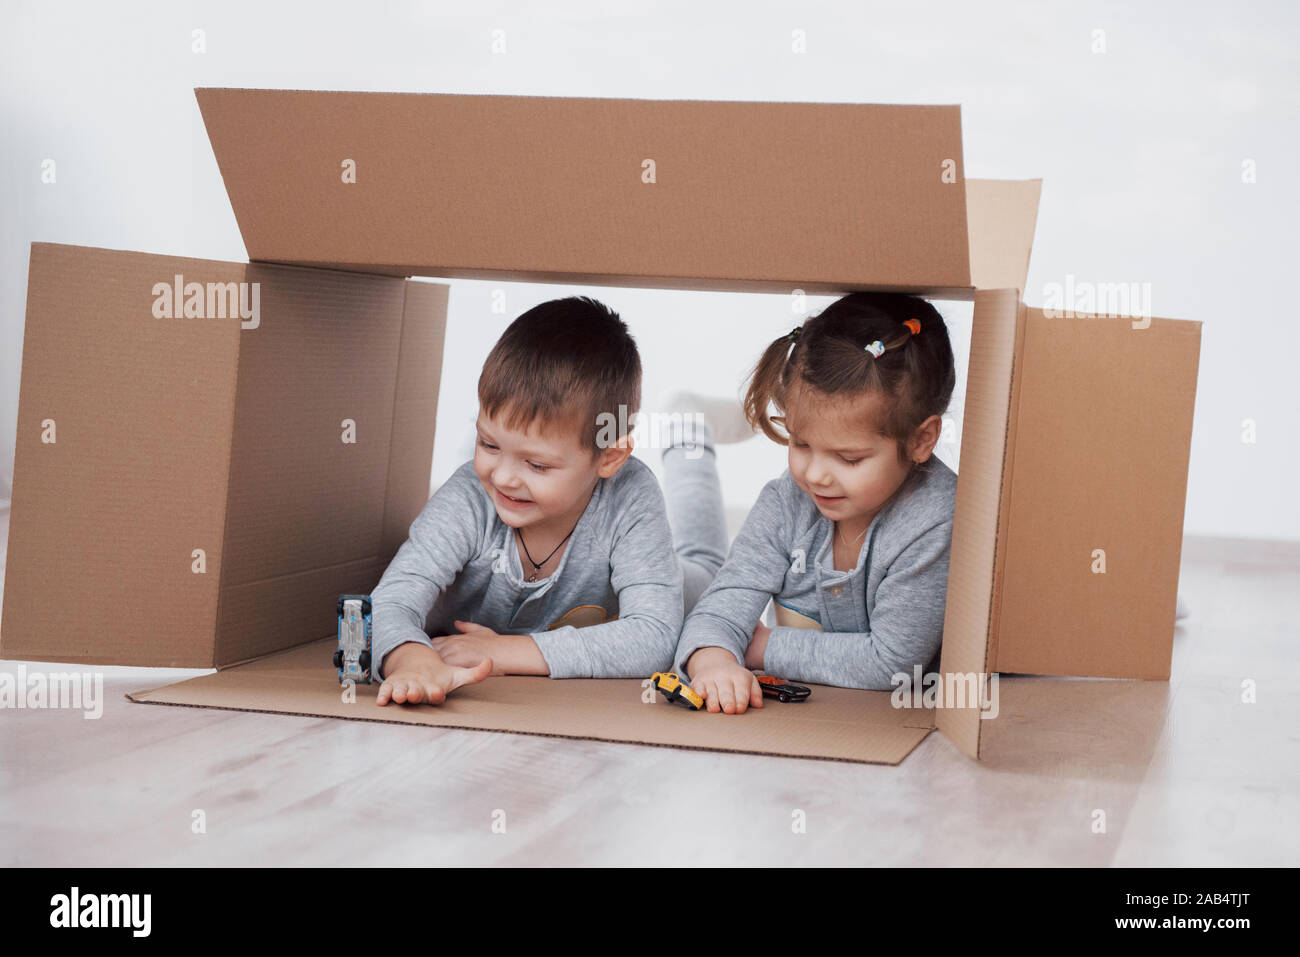 Zwei kleine Kinder, Junge und Mädchen zog gerade in ein neues Haus. Konzept Foto.. Kinder haben Spaß. Stockfoto